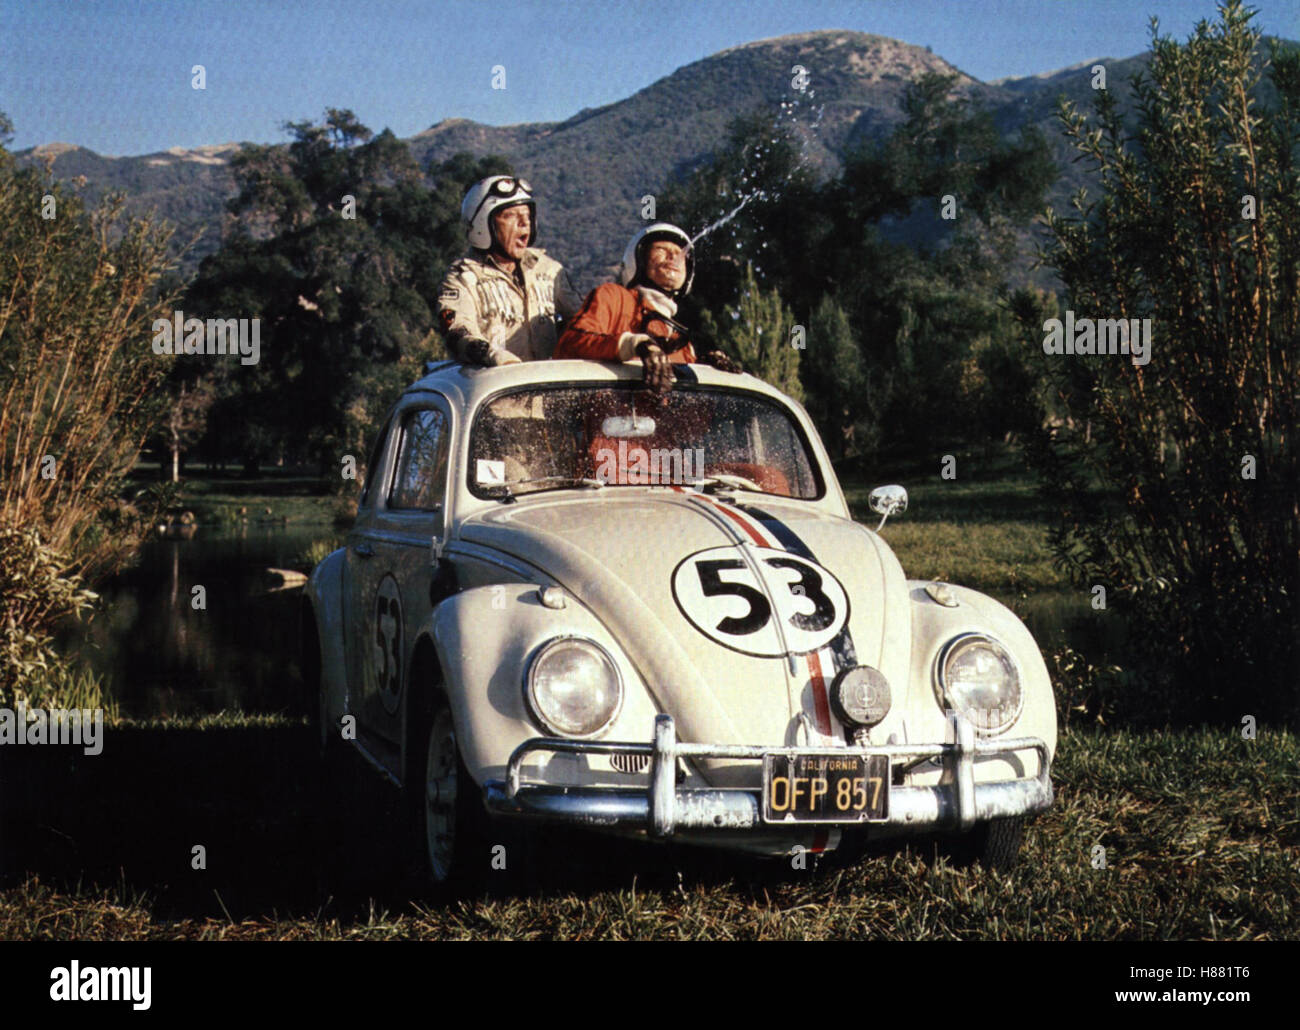 Der tolle Käfer in der Rallye Monte Carlo, GOES TO MONTE CARLO) USA 1976, Regie: Vincent McEveety, DON KNOTTS, DEAN JONES, Stichwort: VW, Auto Stock Photo